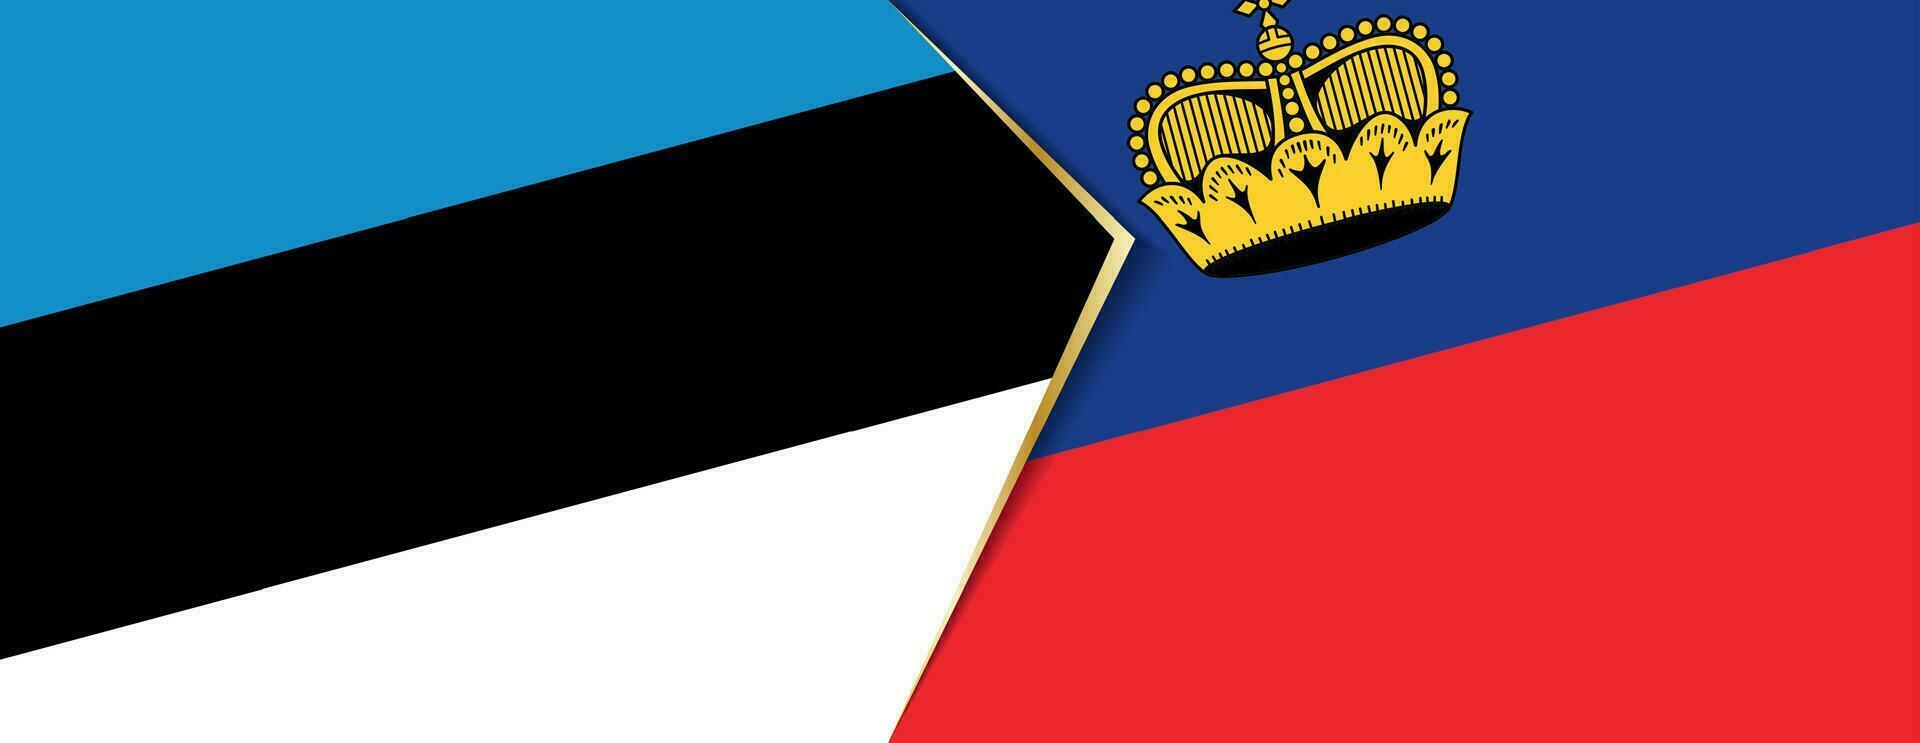 Estonia y Liechtenstein banderas, dos vector banderas